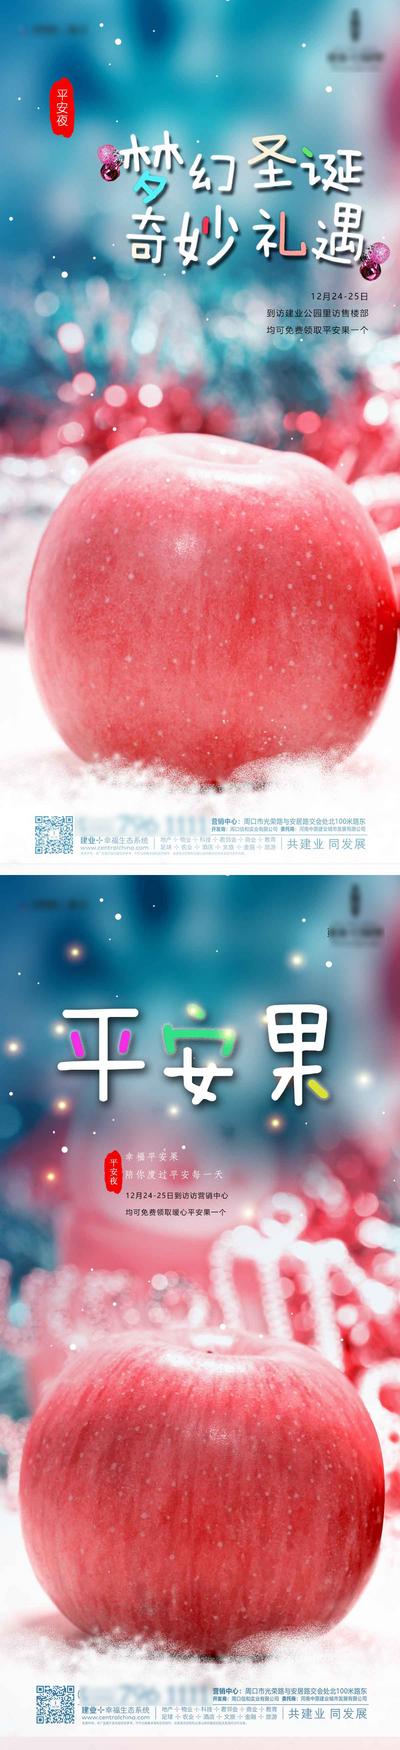 南门网 海报 房地产 公历节日 西方节日 圣诞节 平安夜 苹果 